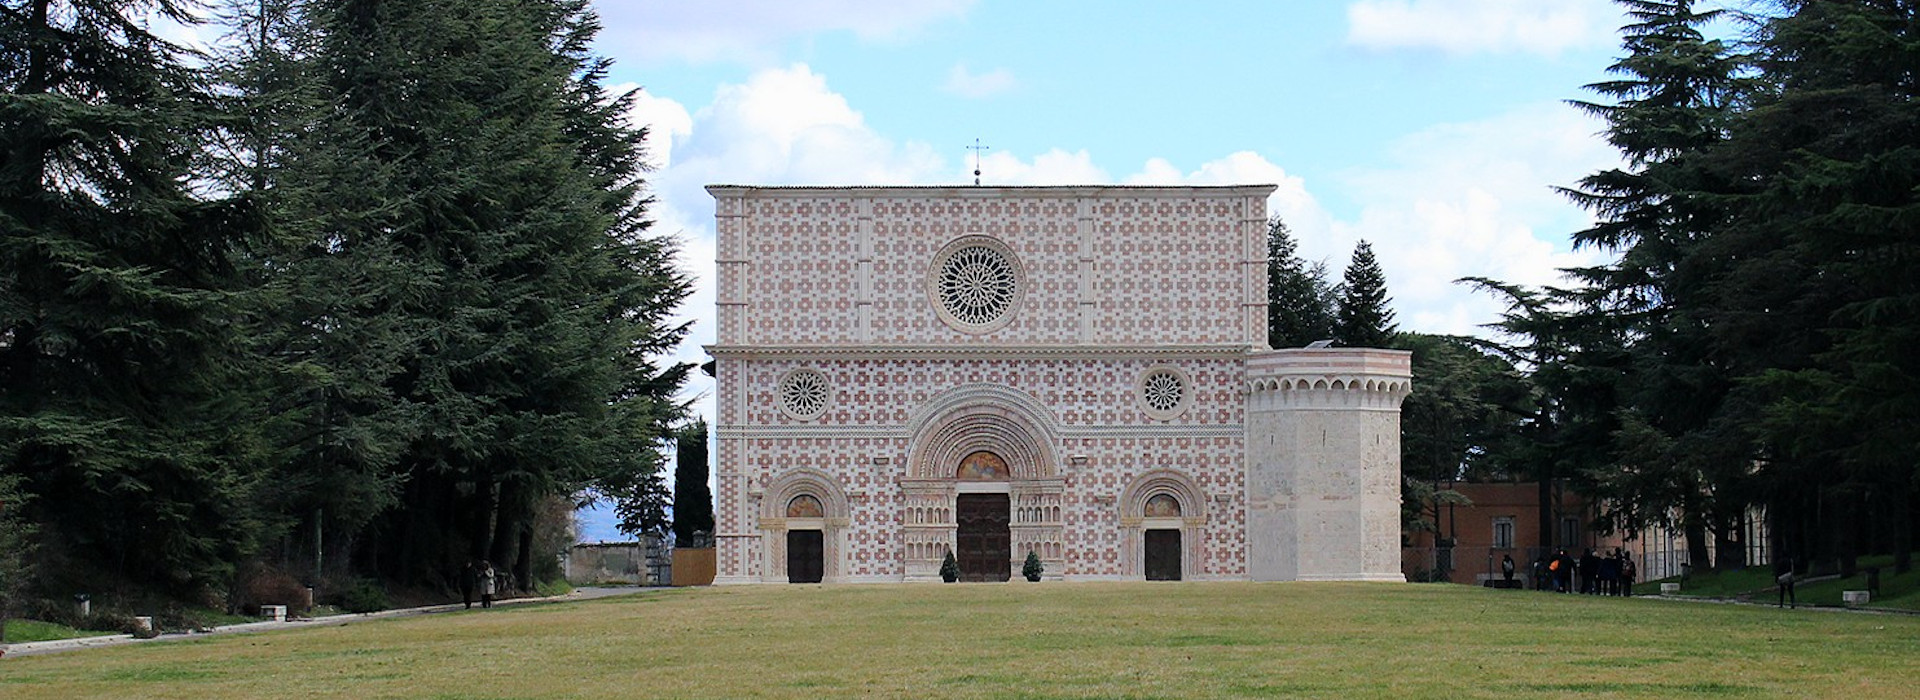 Basilica di Collemaggio